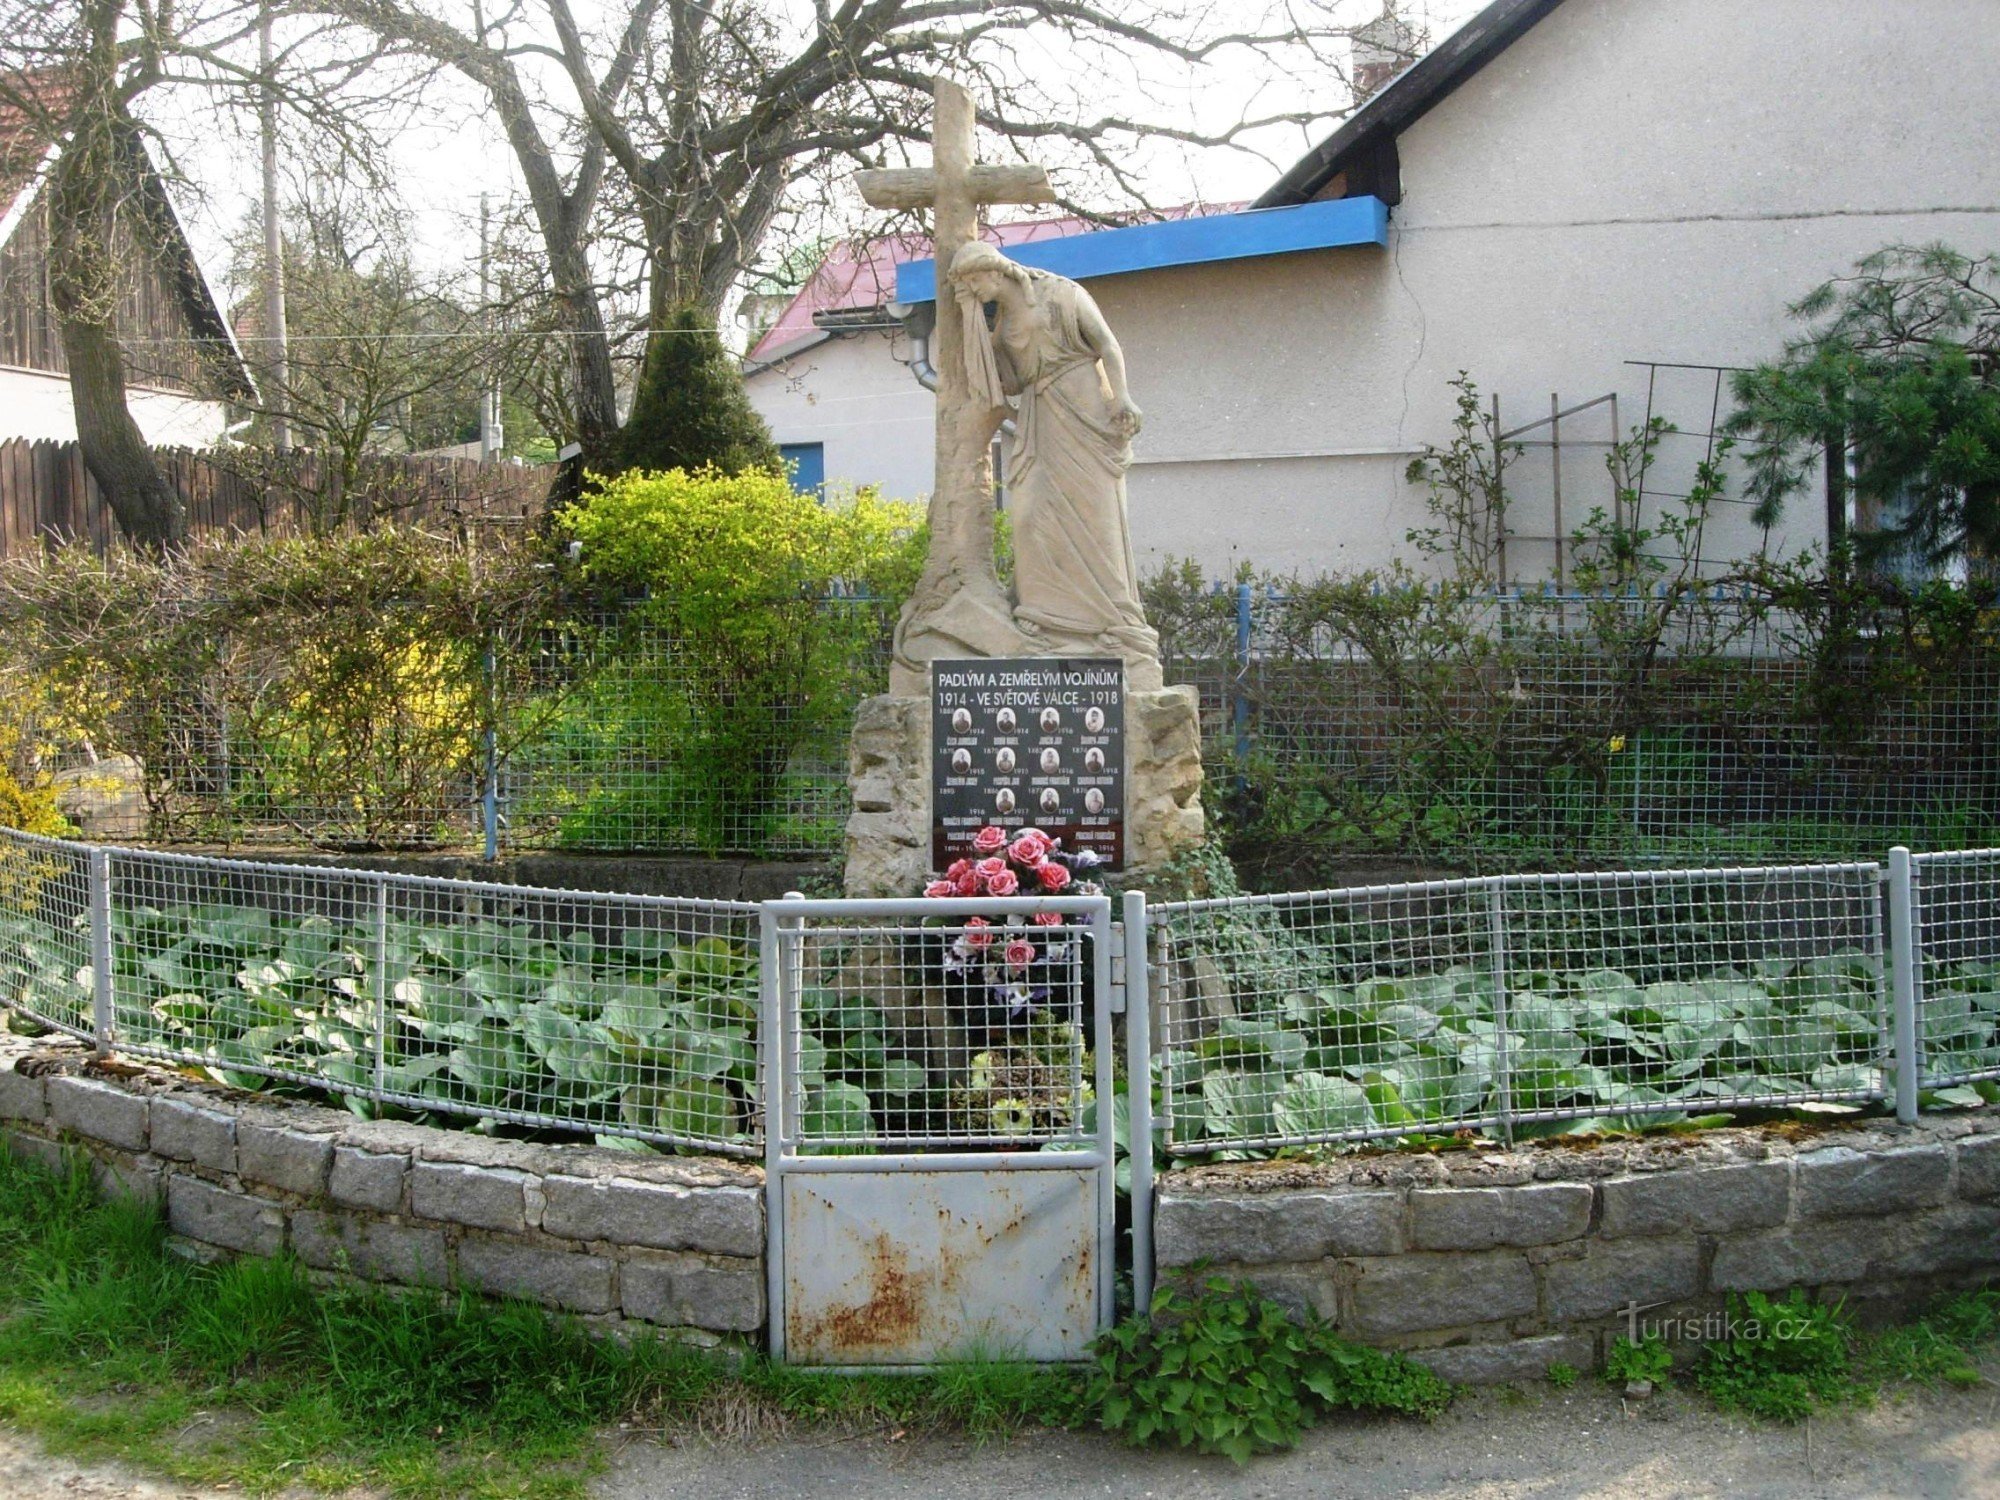 Ensimmäisen maailmansodan uhrien muistomerkki. sota Jaroslavicessa